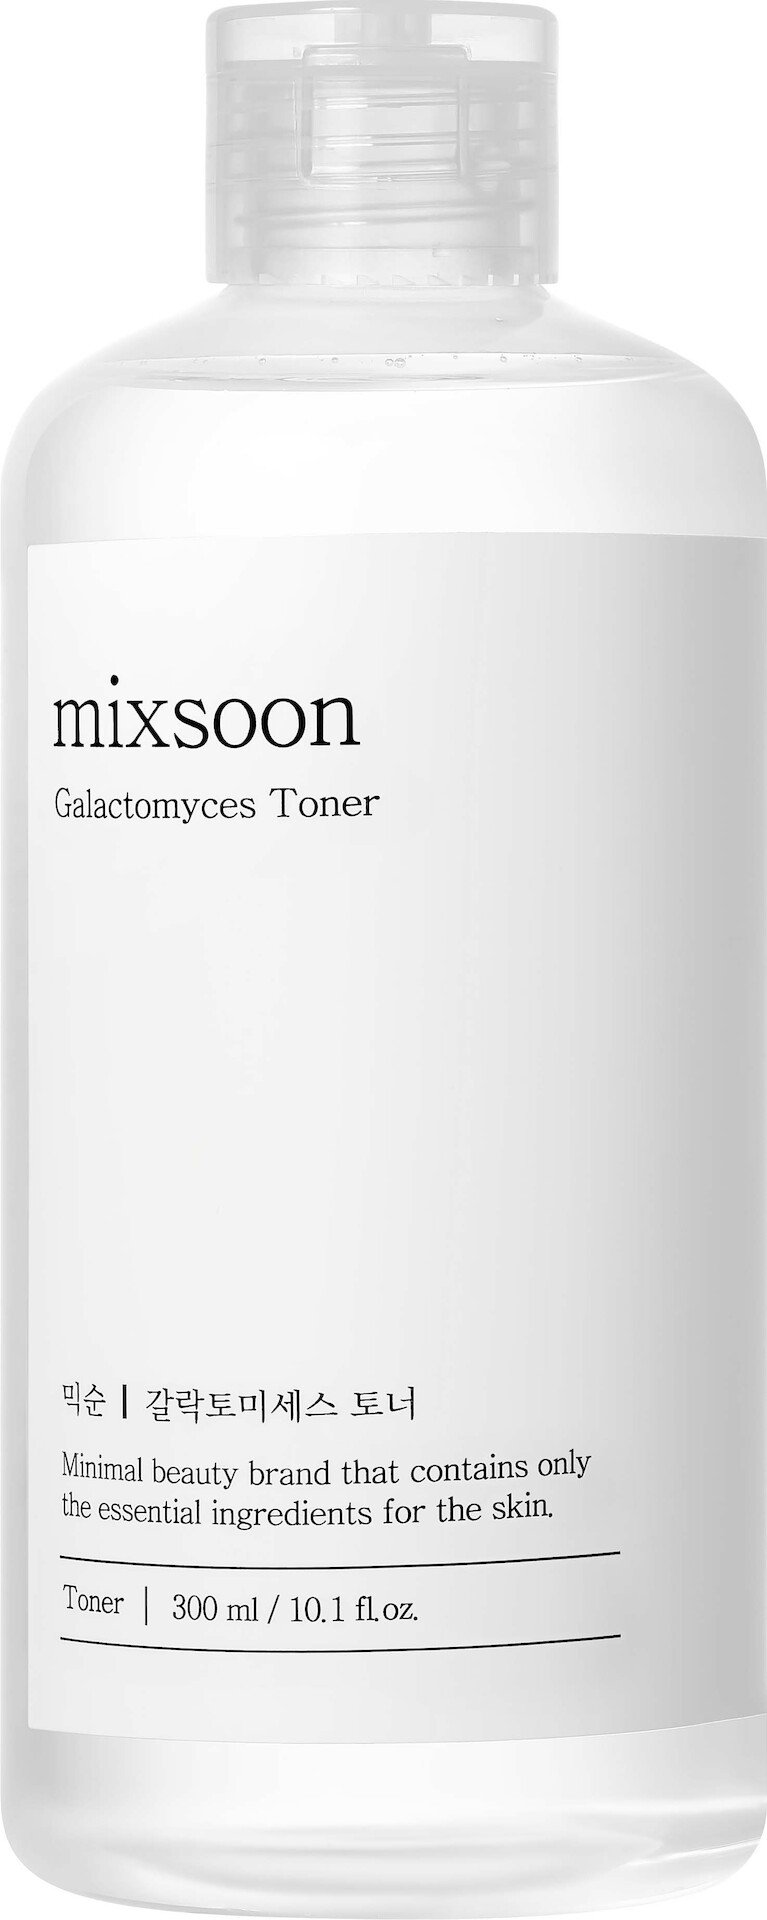 Mixsoon Galactomyces Toner 300ml